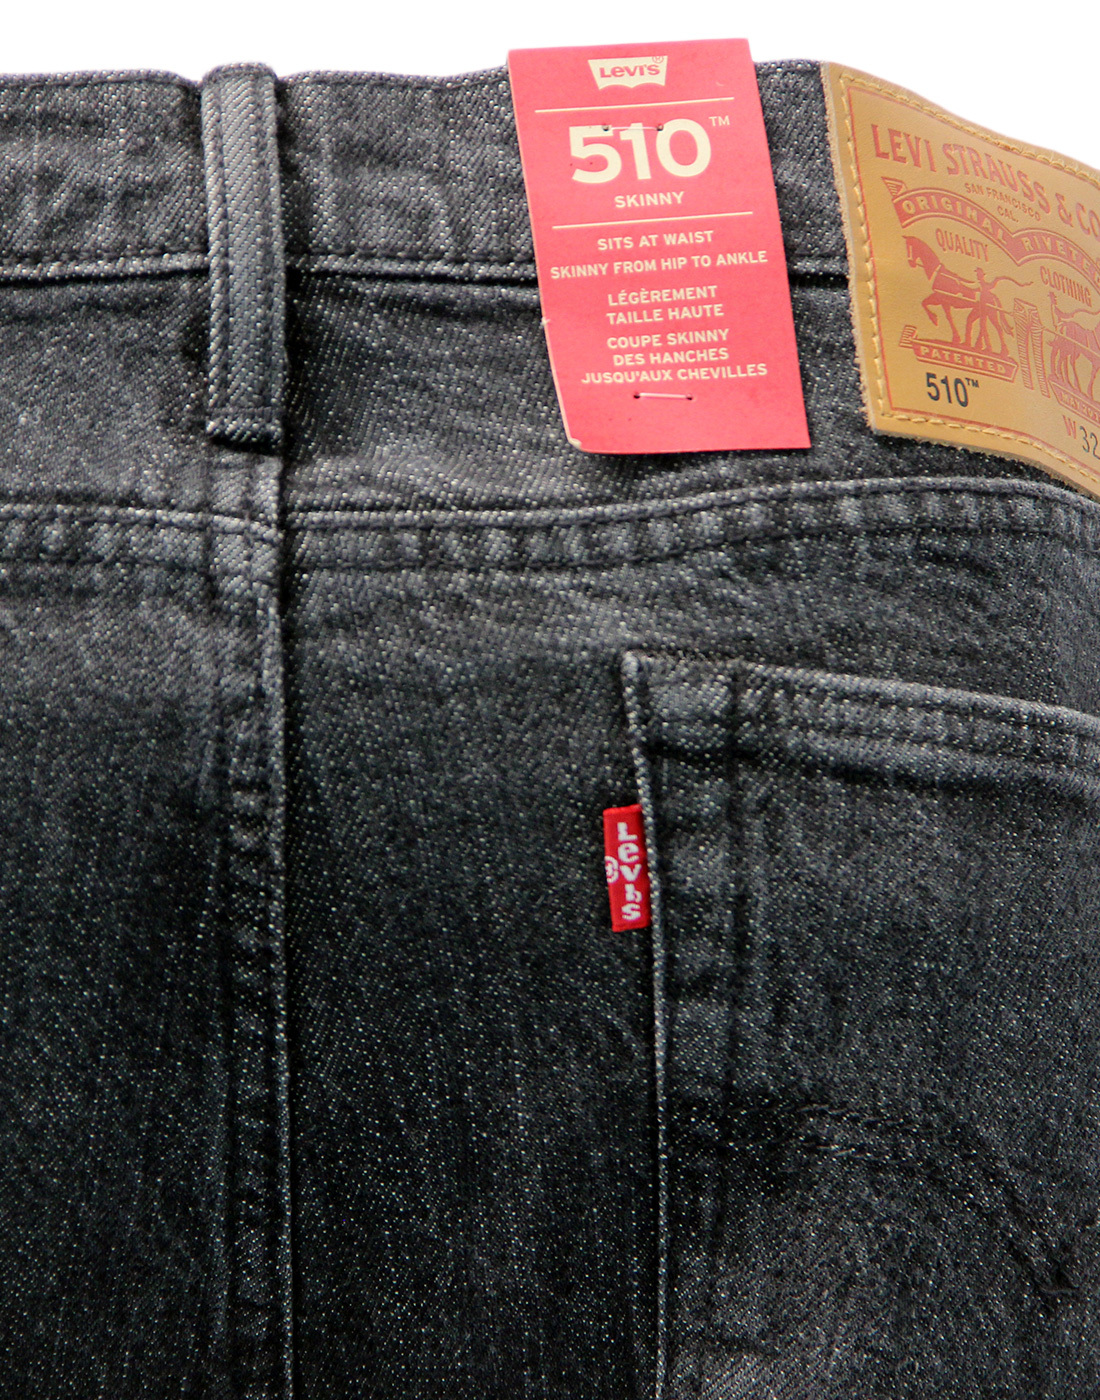 levis 510 black jeans